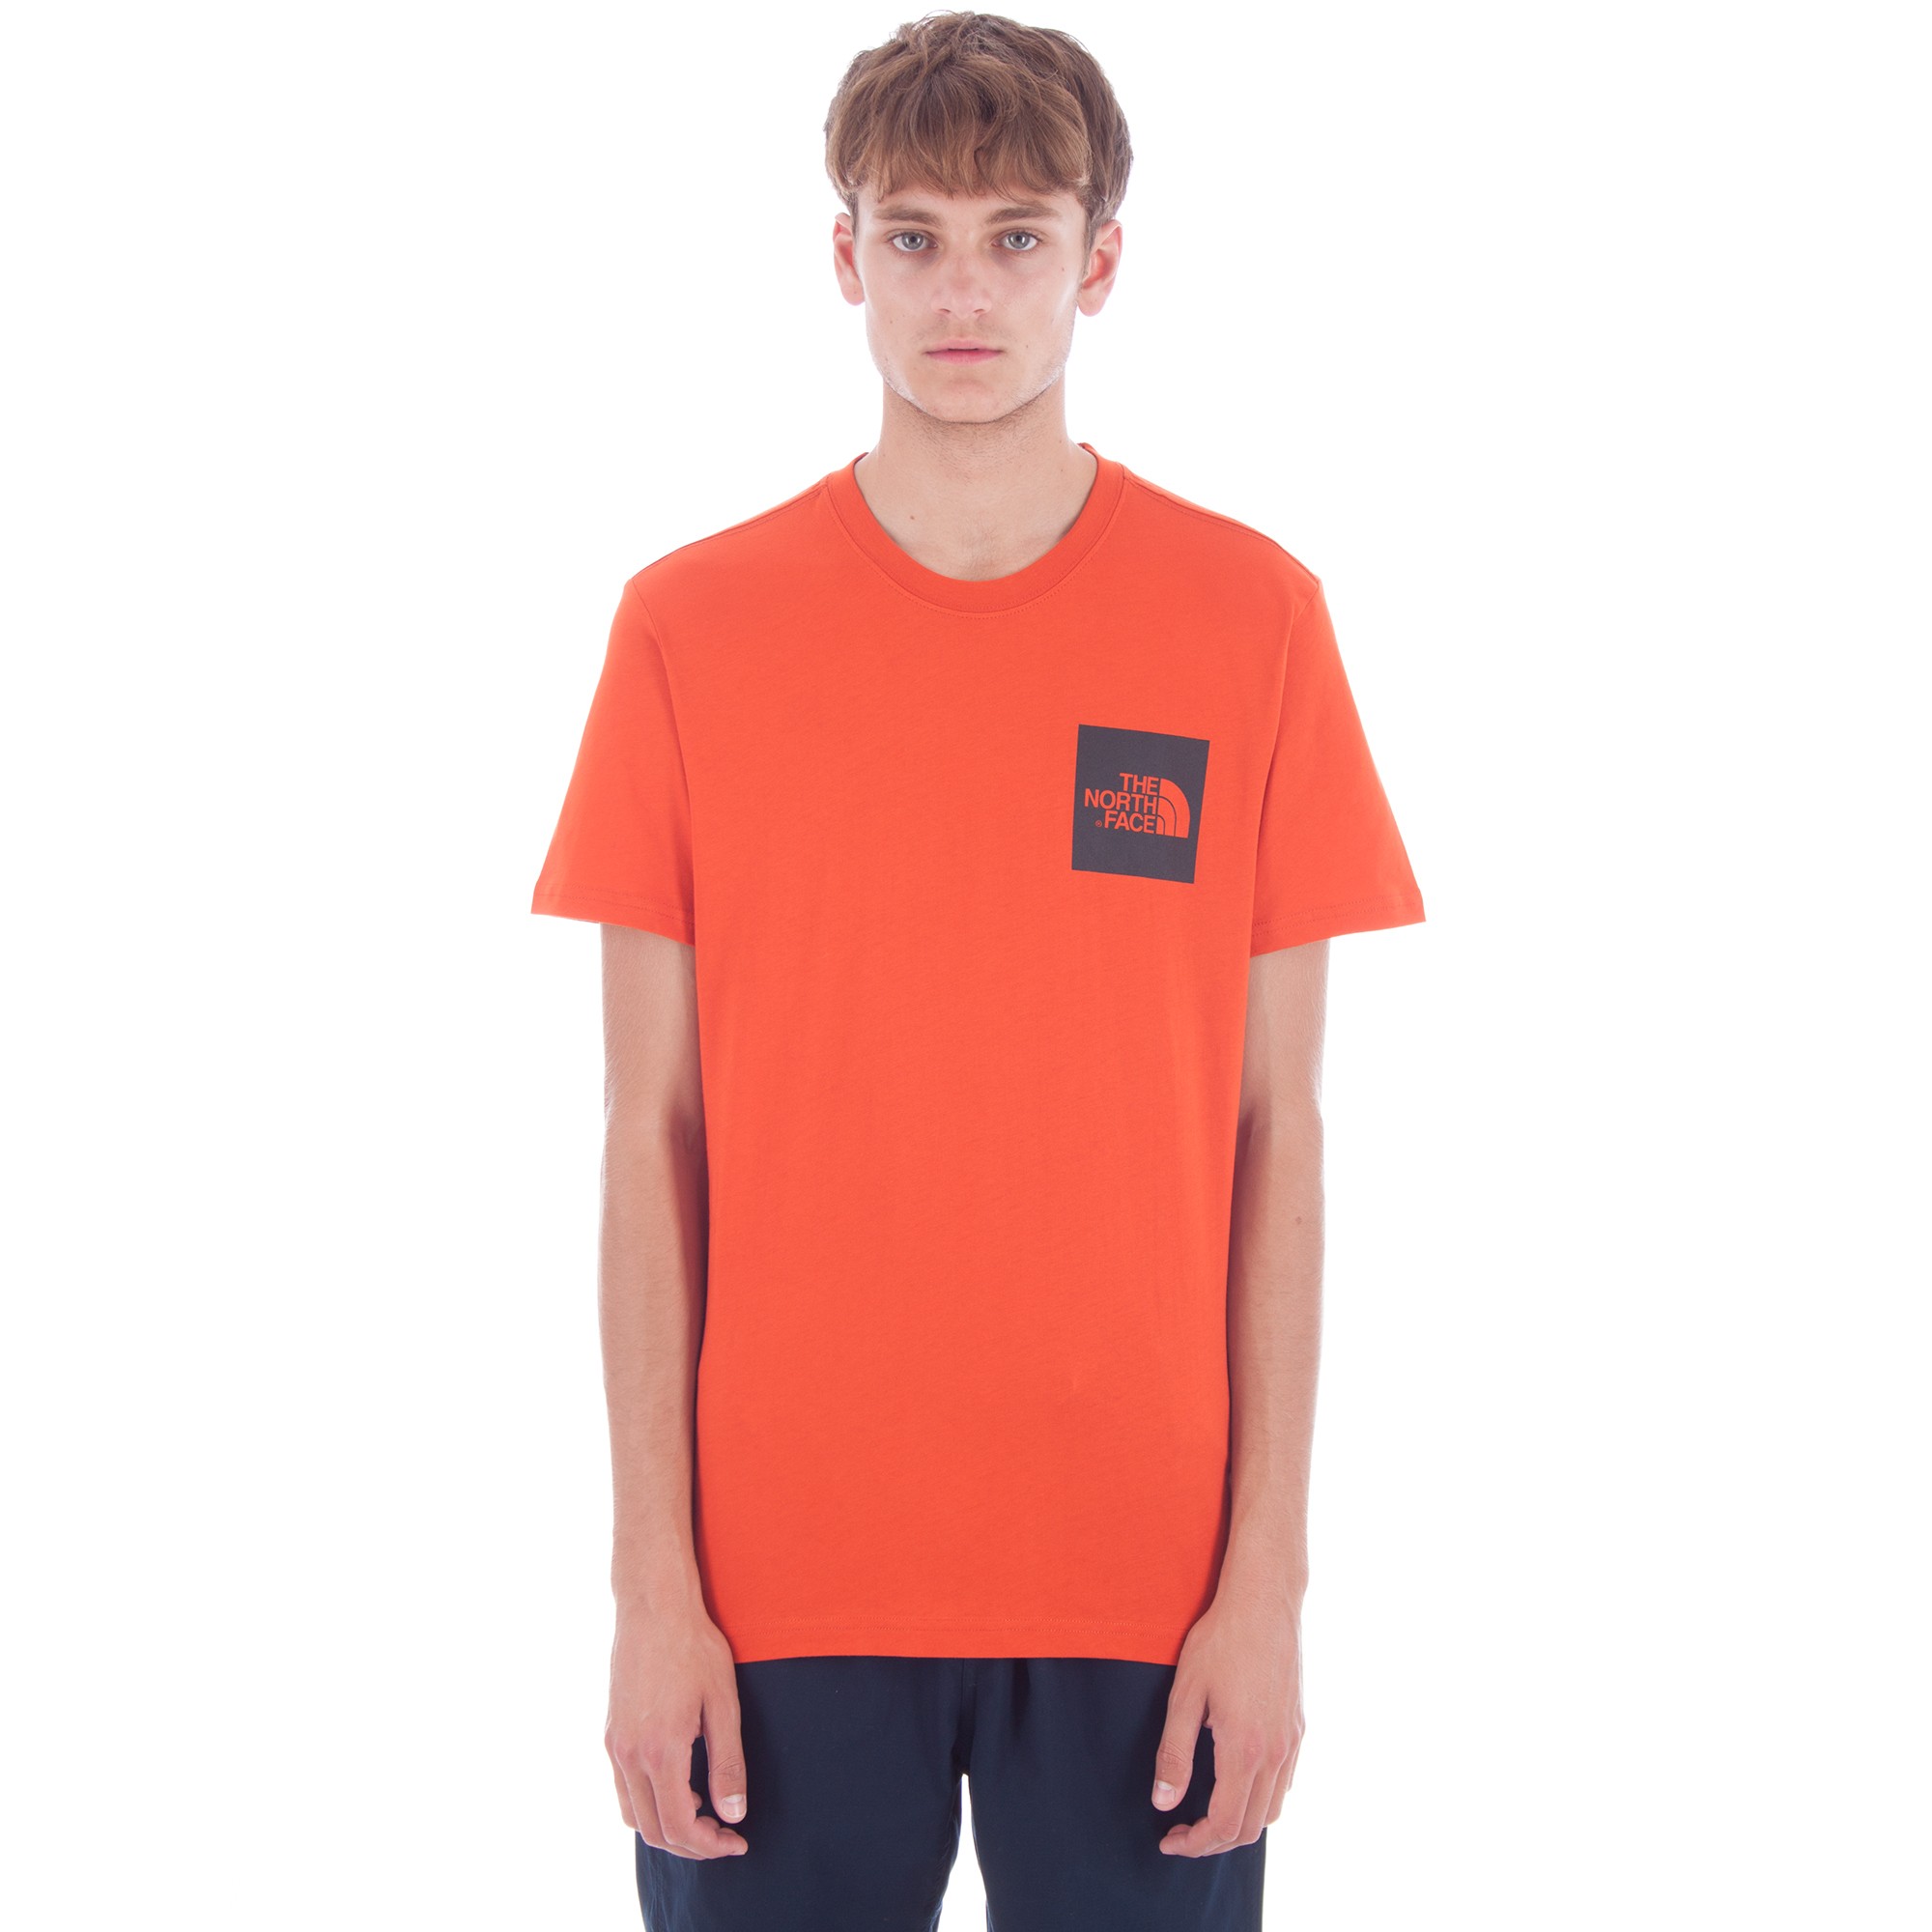 The North Face Fine T-Shirt (Tibetan Orange) - Consortium.